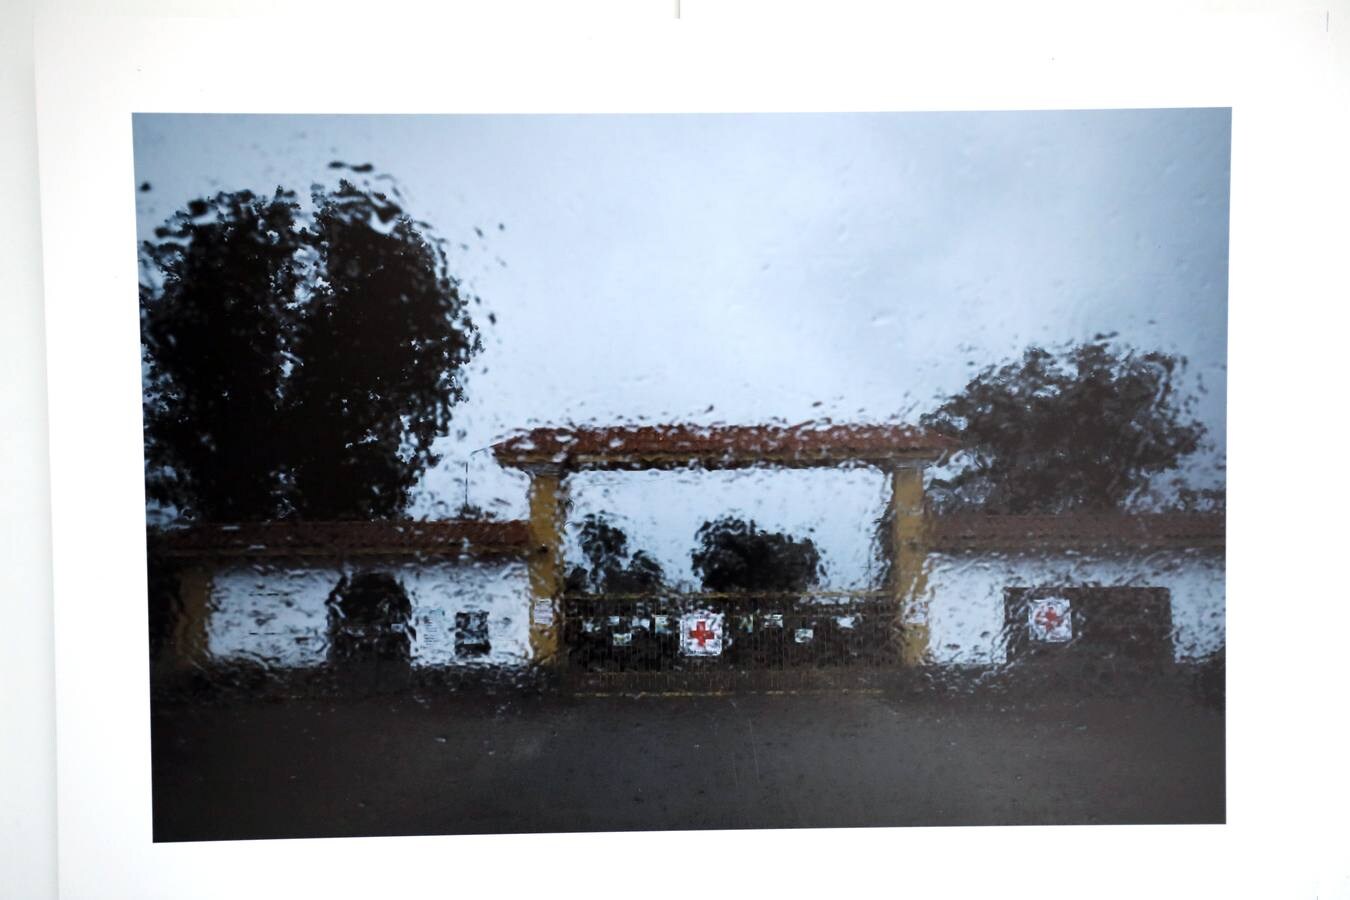 Fotos: El patio de la Asamblea de Extremadura acoge la exposición &#039;La revelación de la empatía&#039;